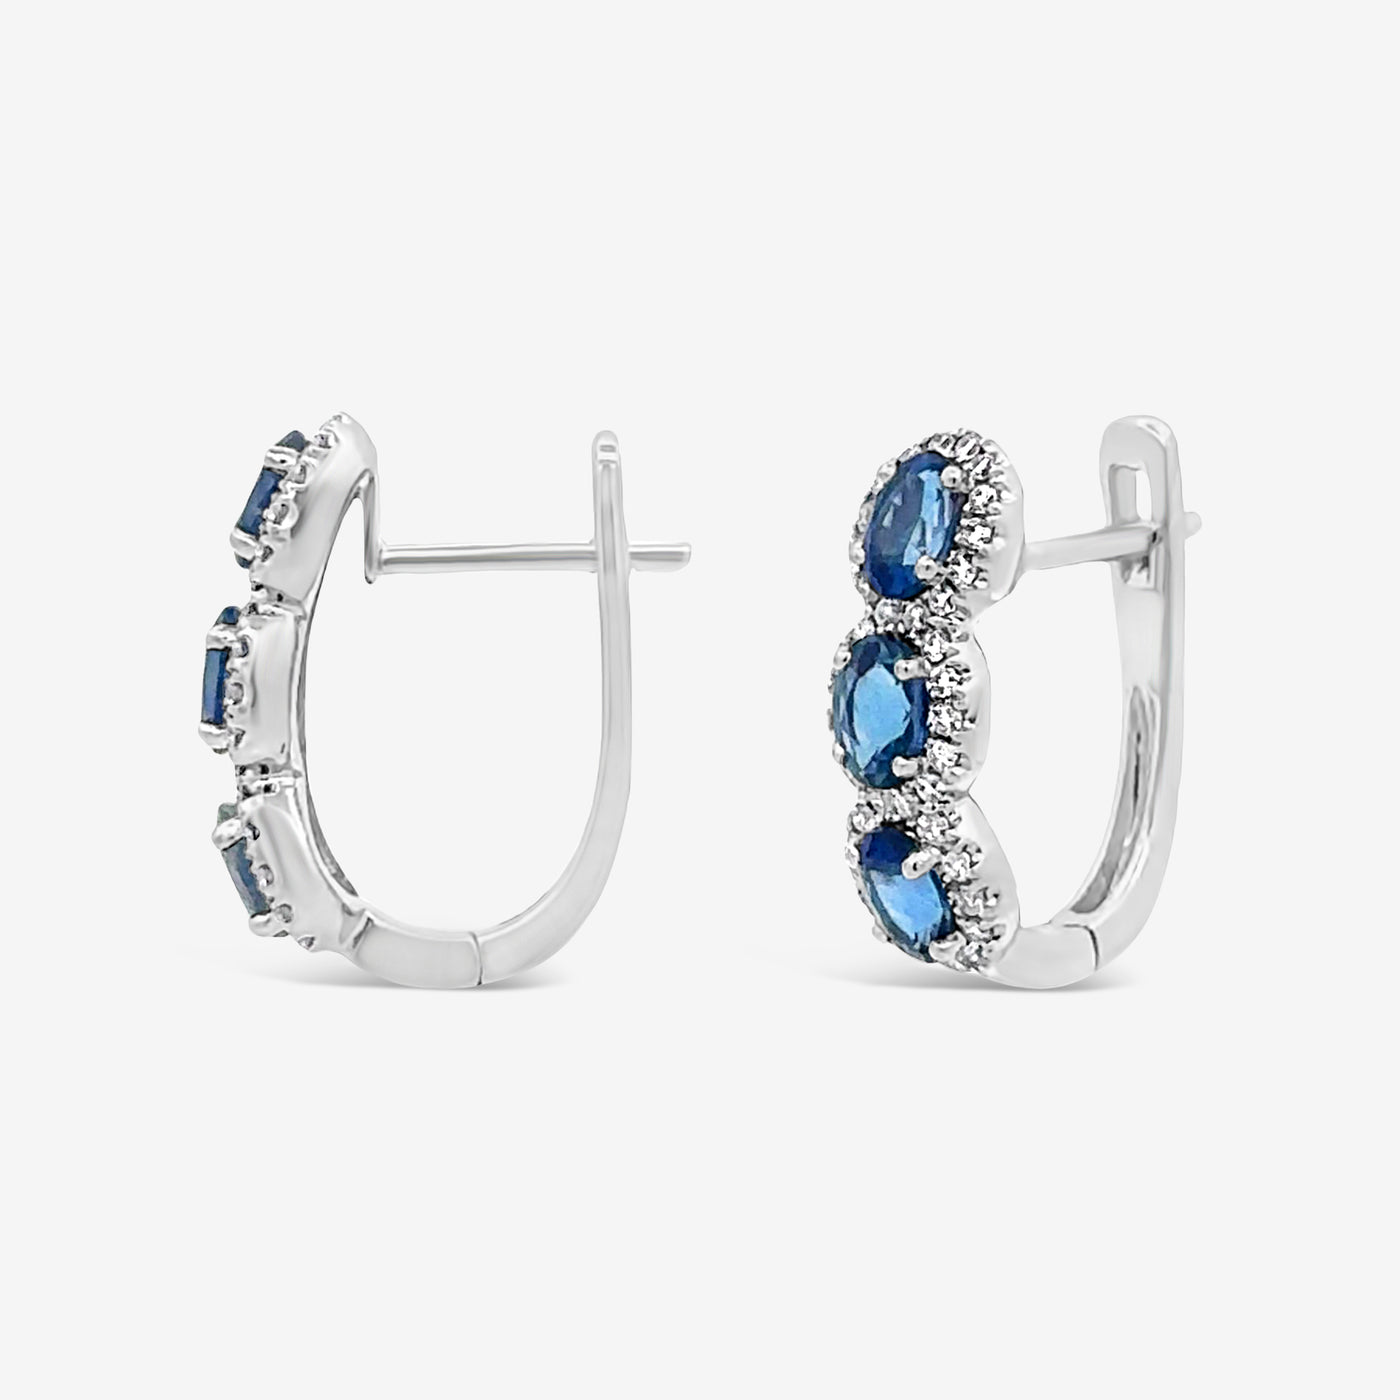 Oval Cut Sapphire & Diamond Halo Earrings